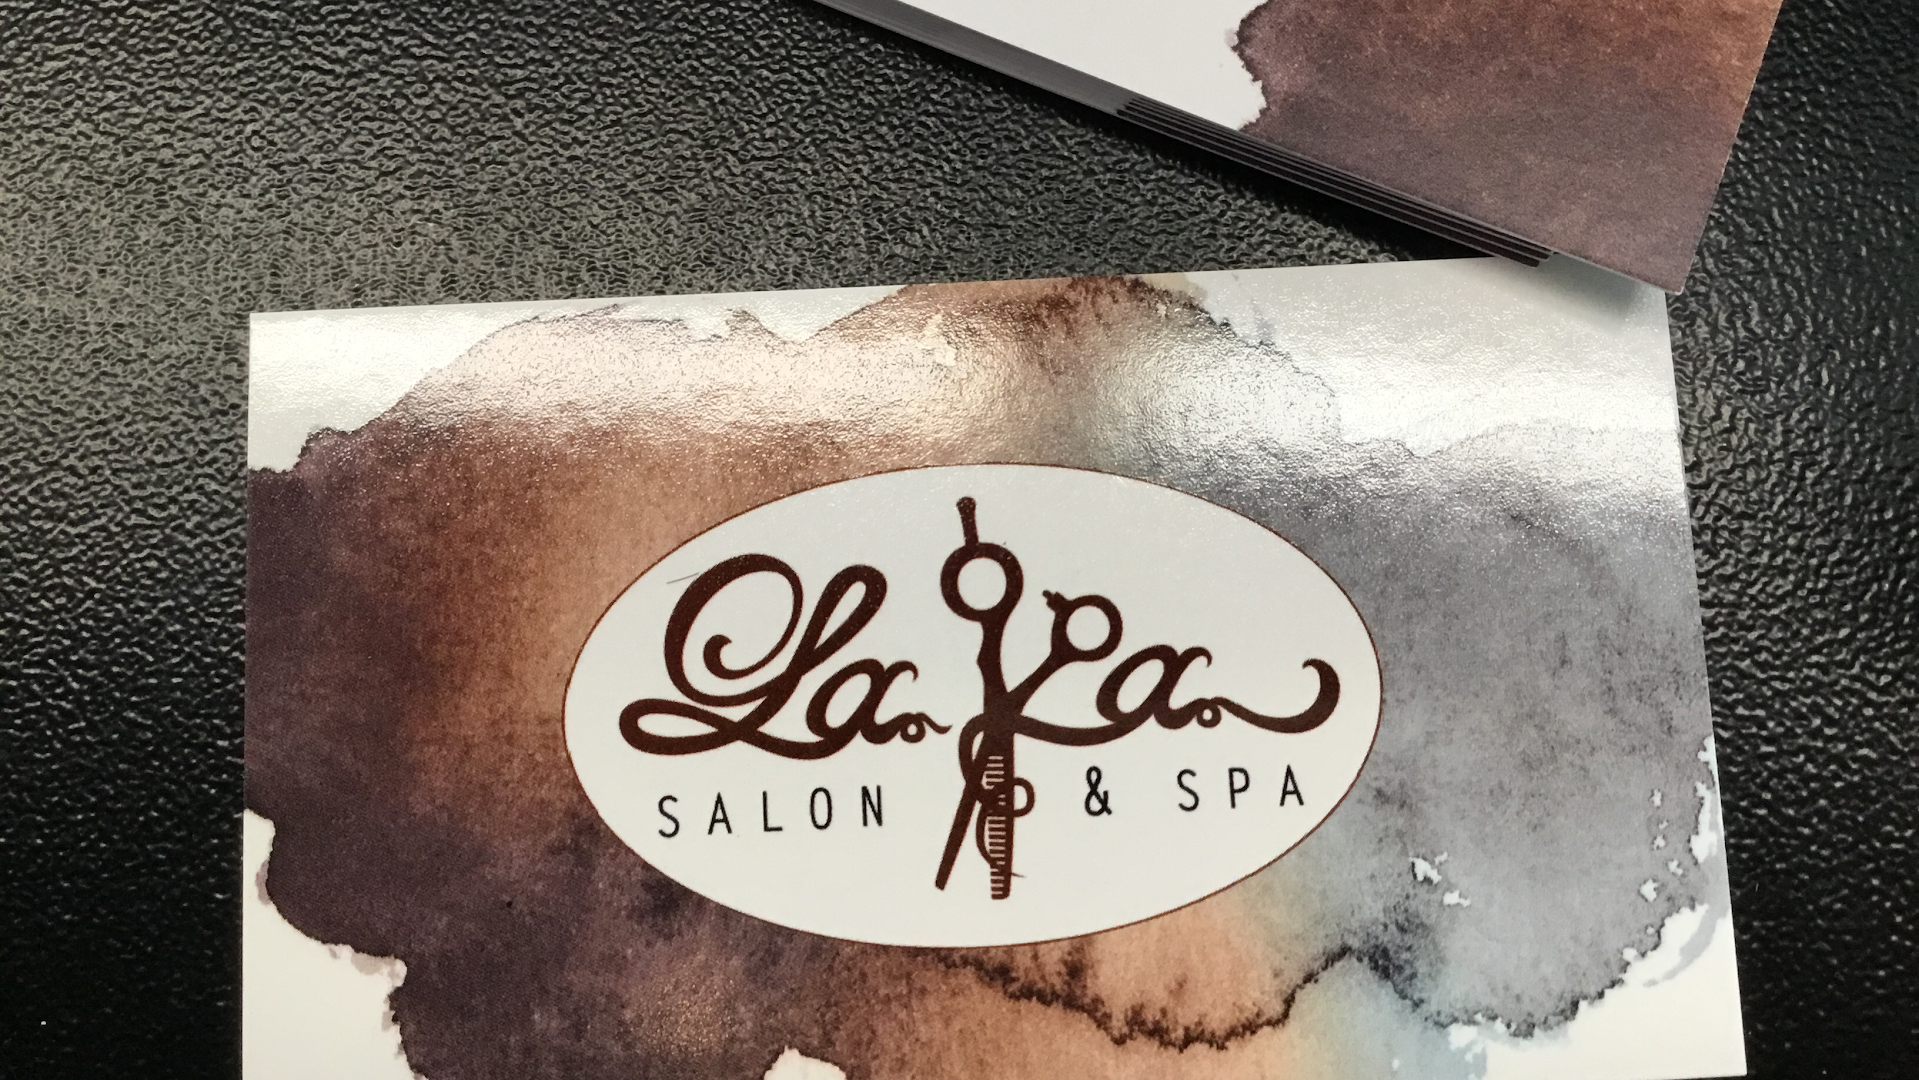 LaVa Salon & Spa